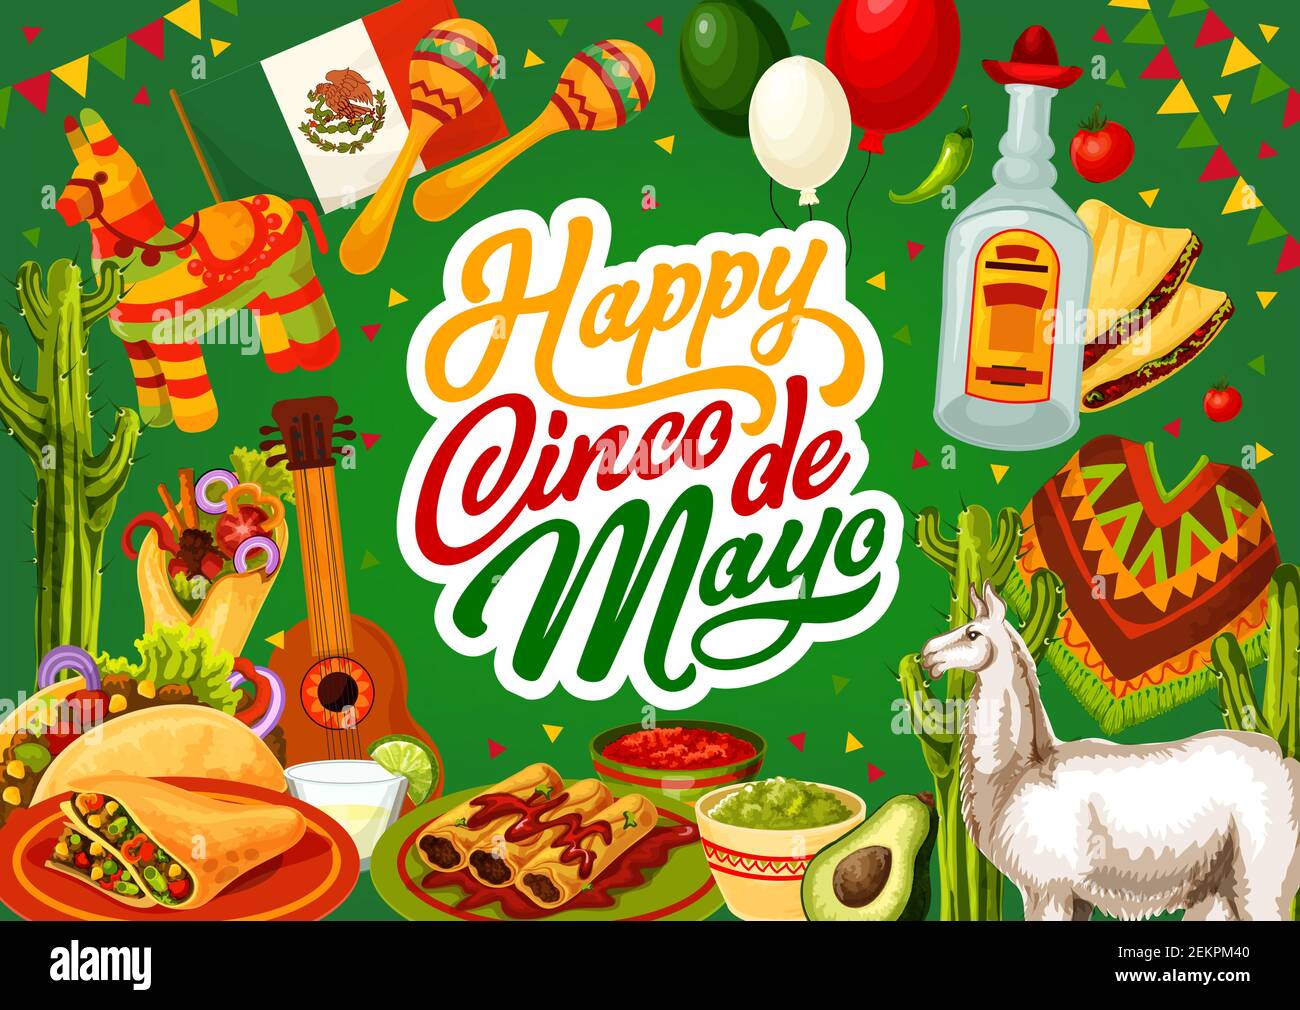 Happy Cinco de Mayo, Mexico celebration holiday food and fiesta symbols